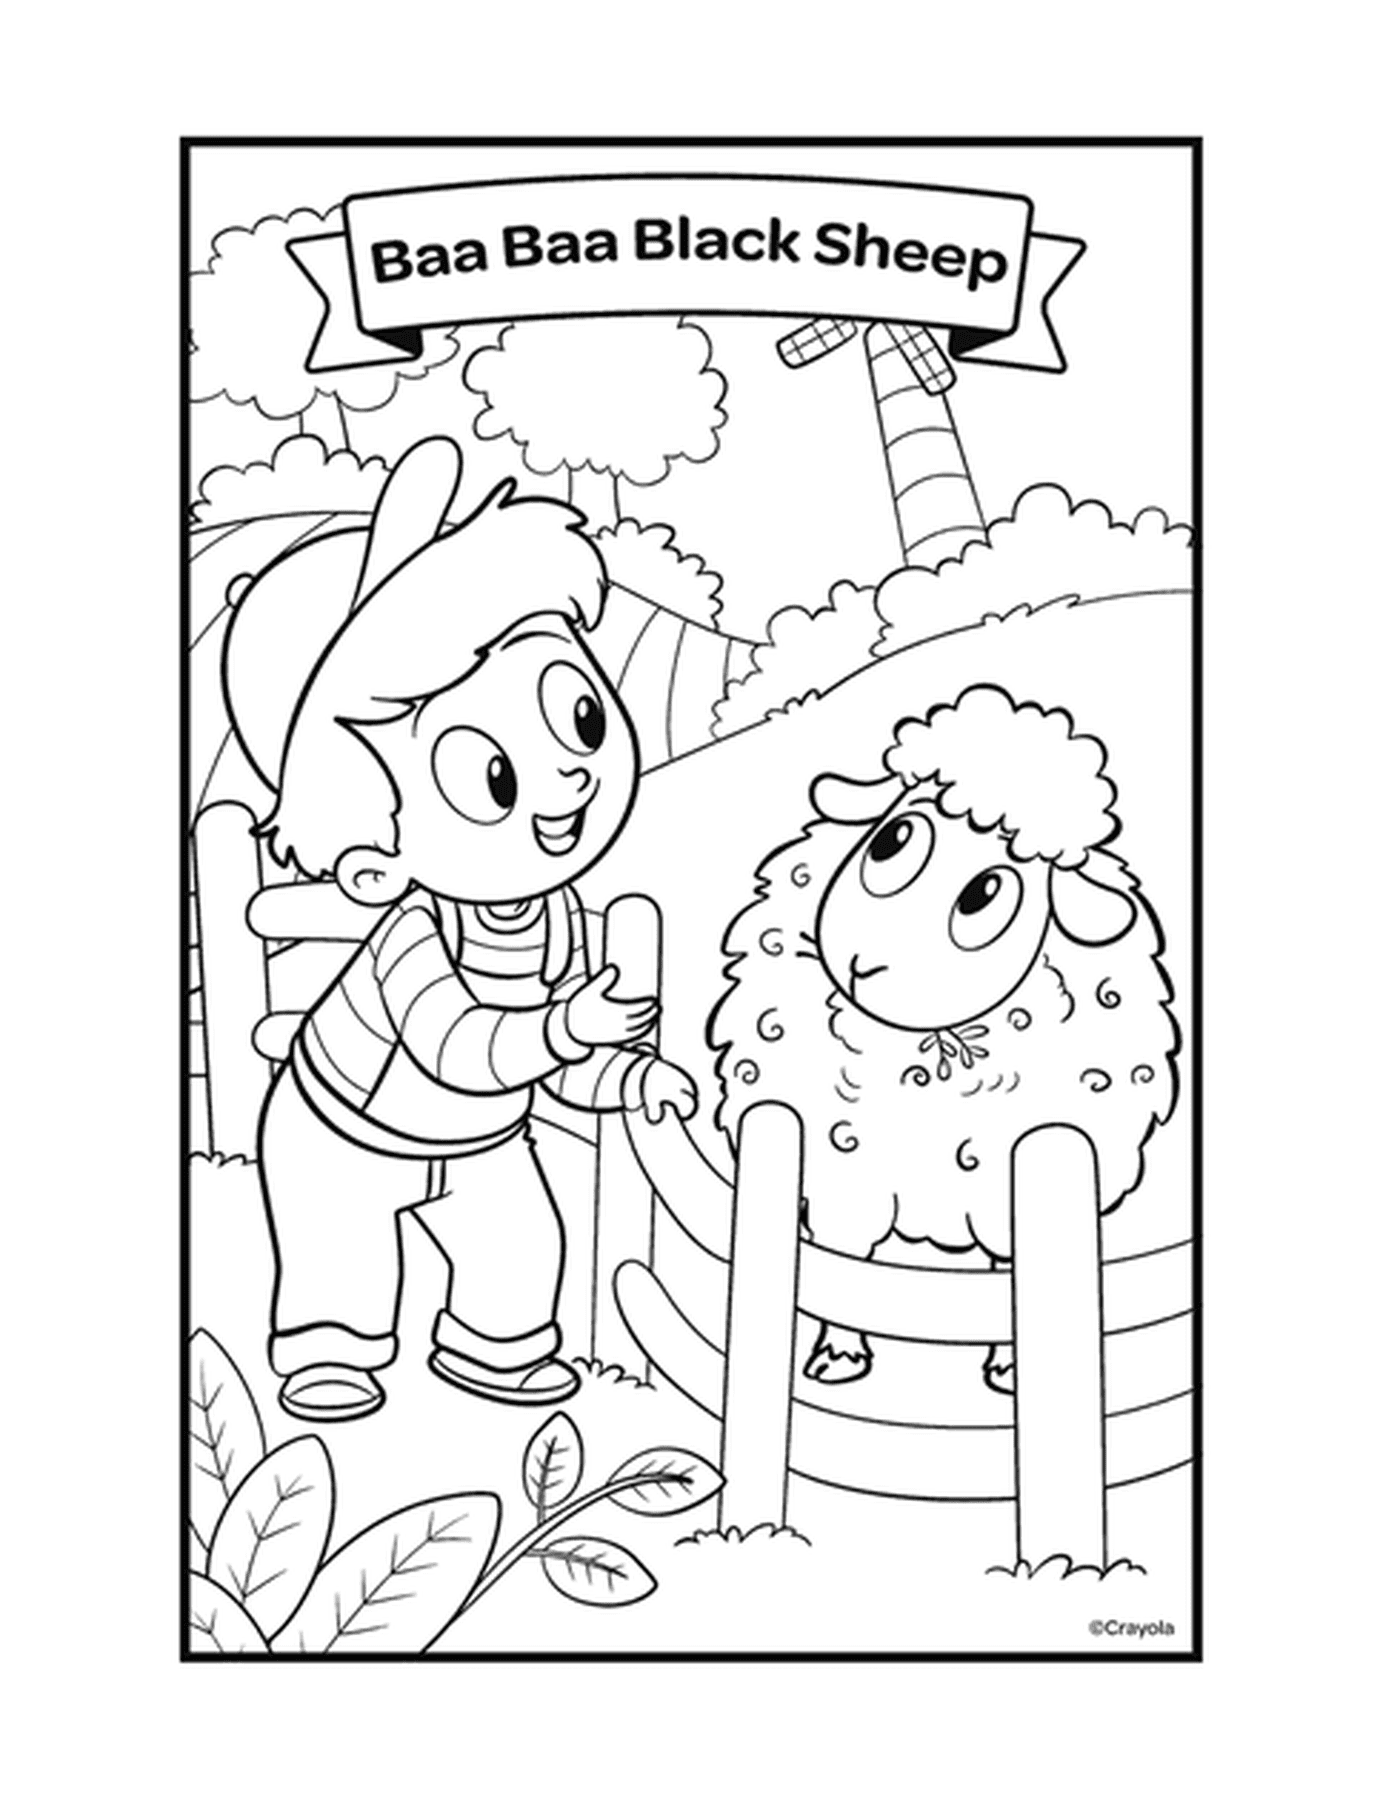   La comptine Baa Baa Black Sheep avec un garçon caressant un mouton dans un enclos 